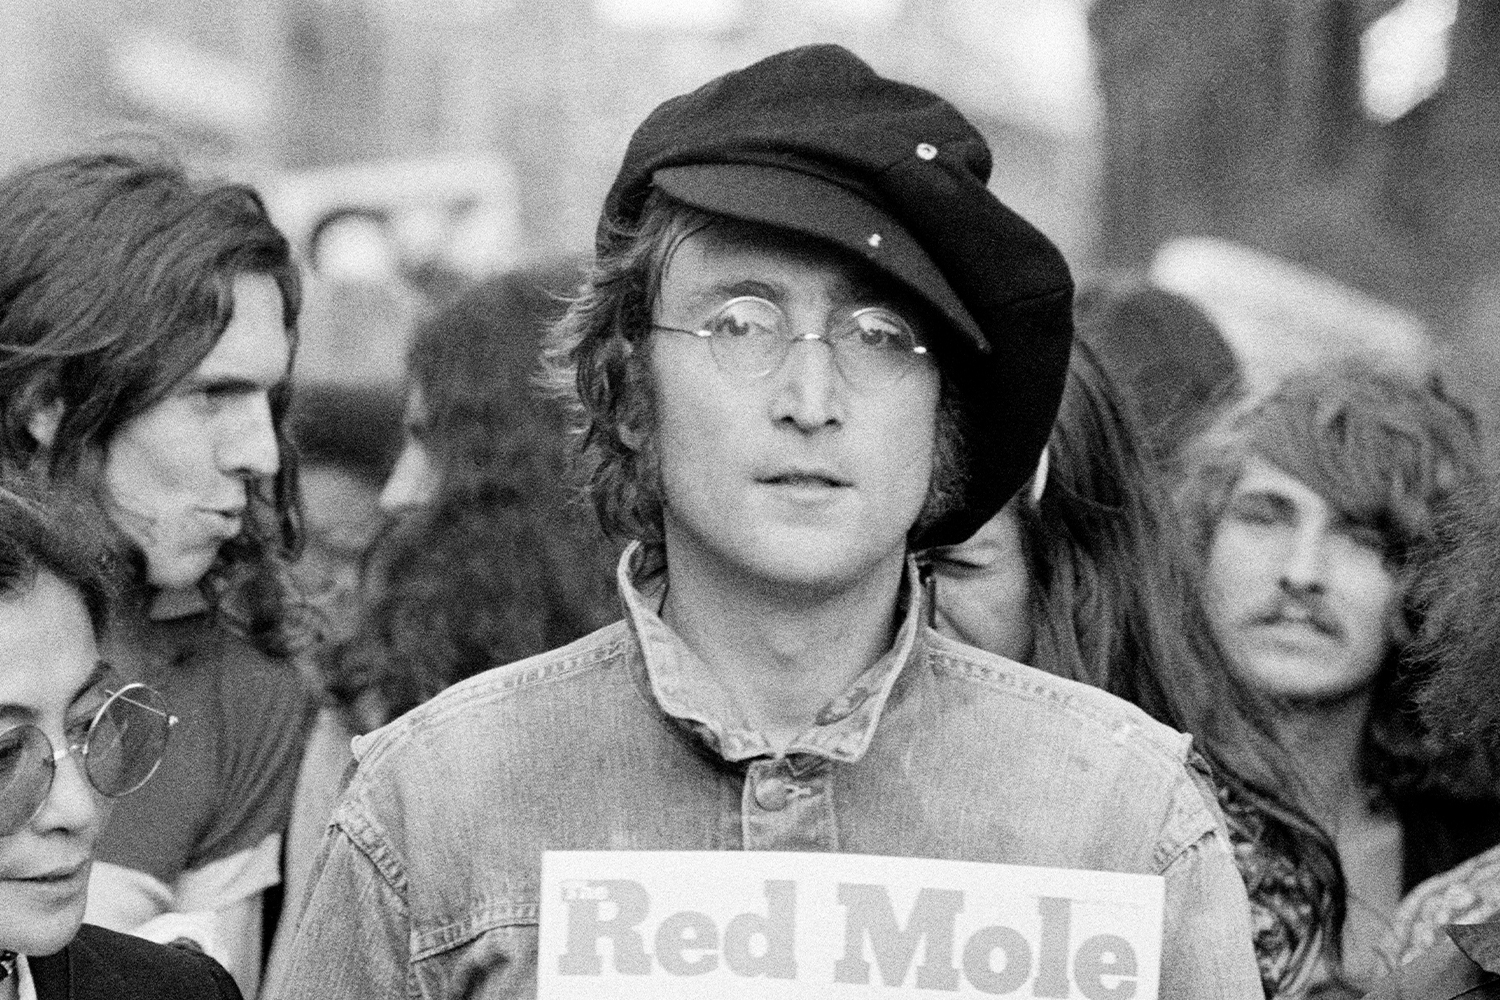 Lennon in 1975